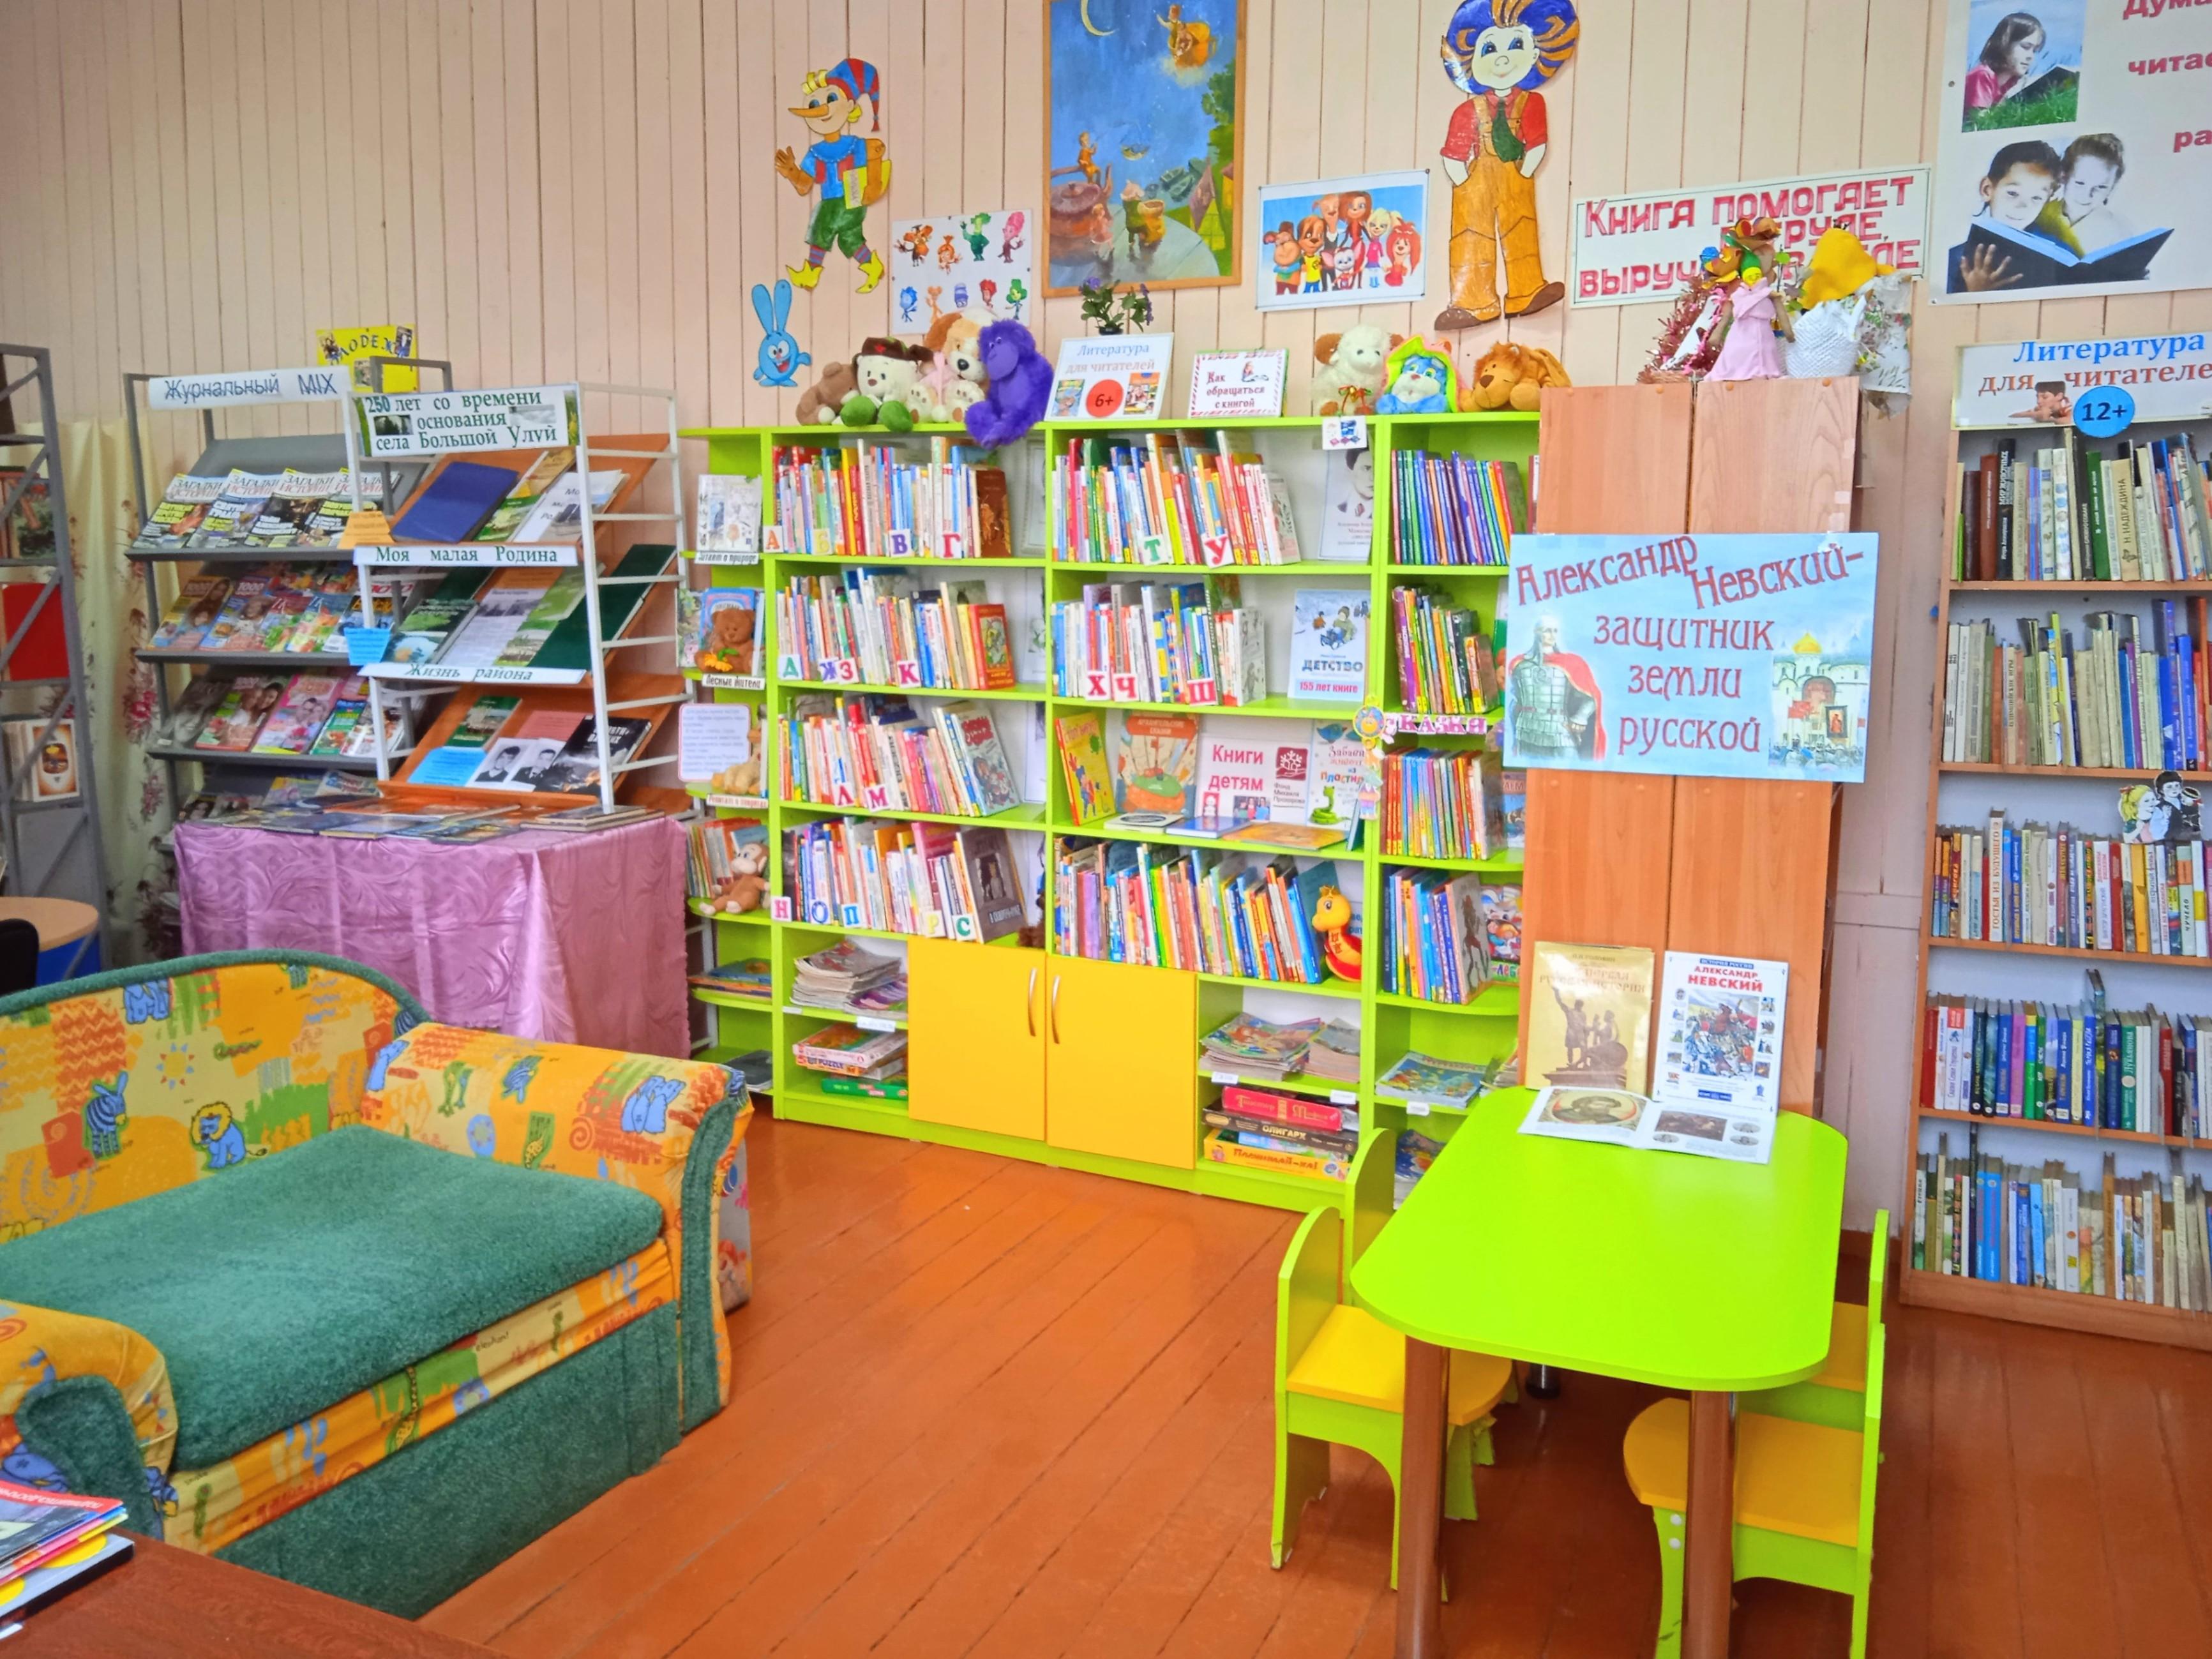 Сучковская сельская библиотека